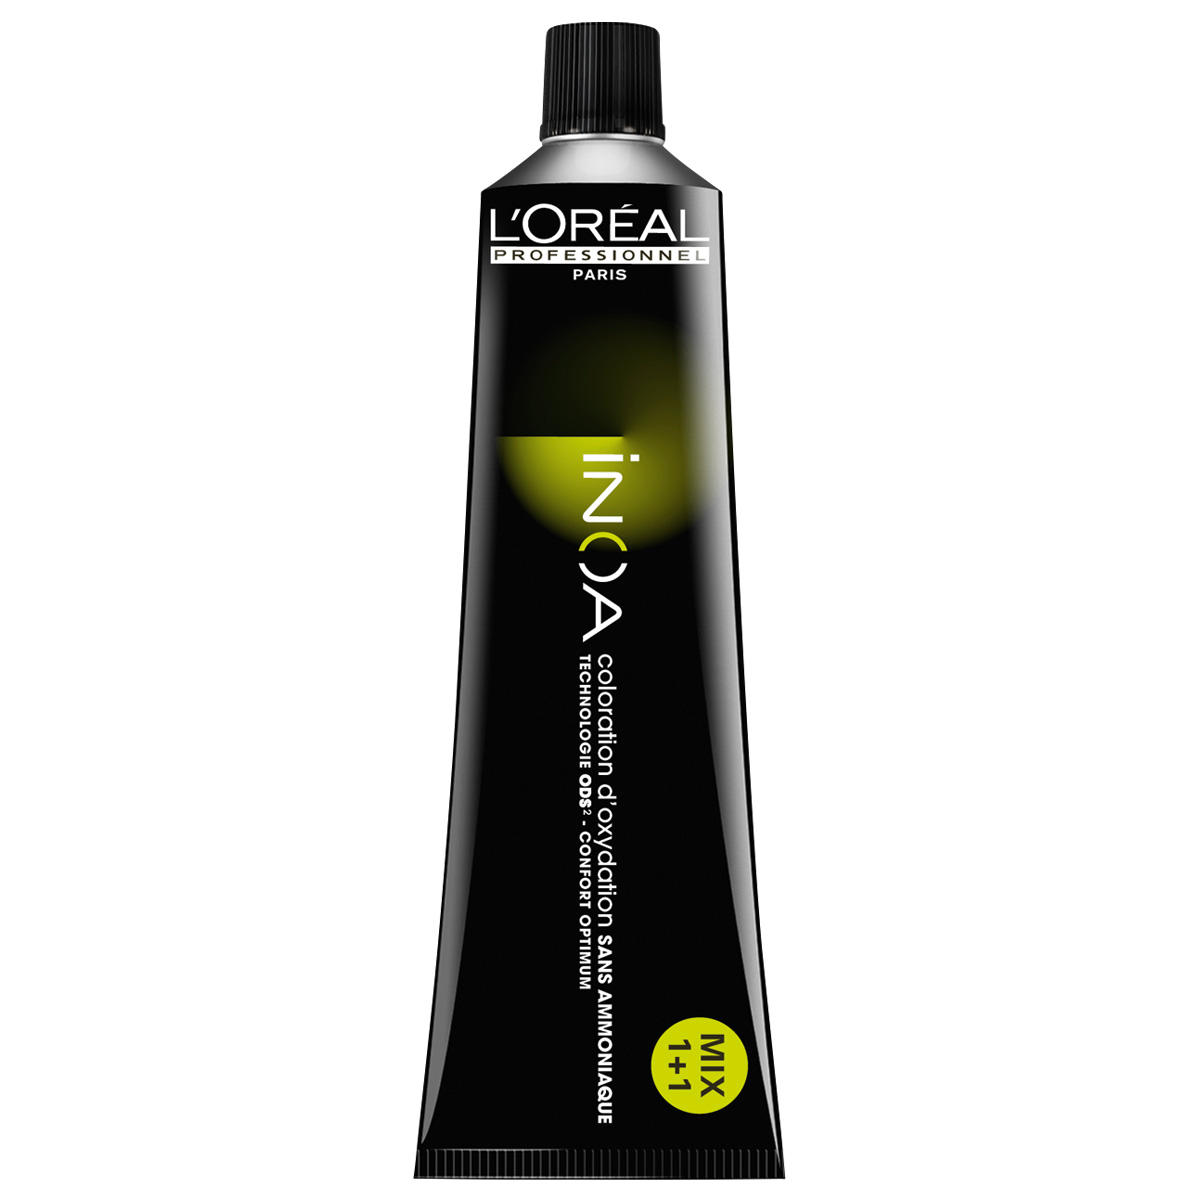 L'Oréal Professionnel Paris Coloration 9,2 blond très clair irisé, Tube 60 ml